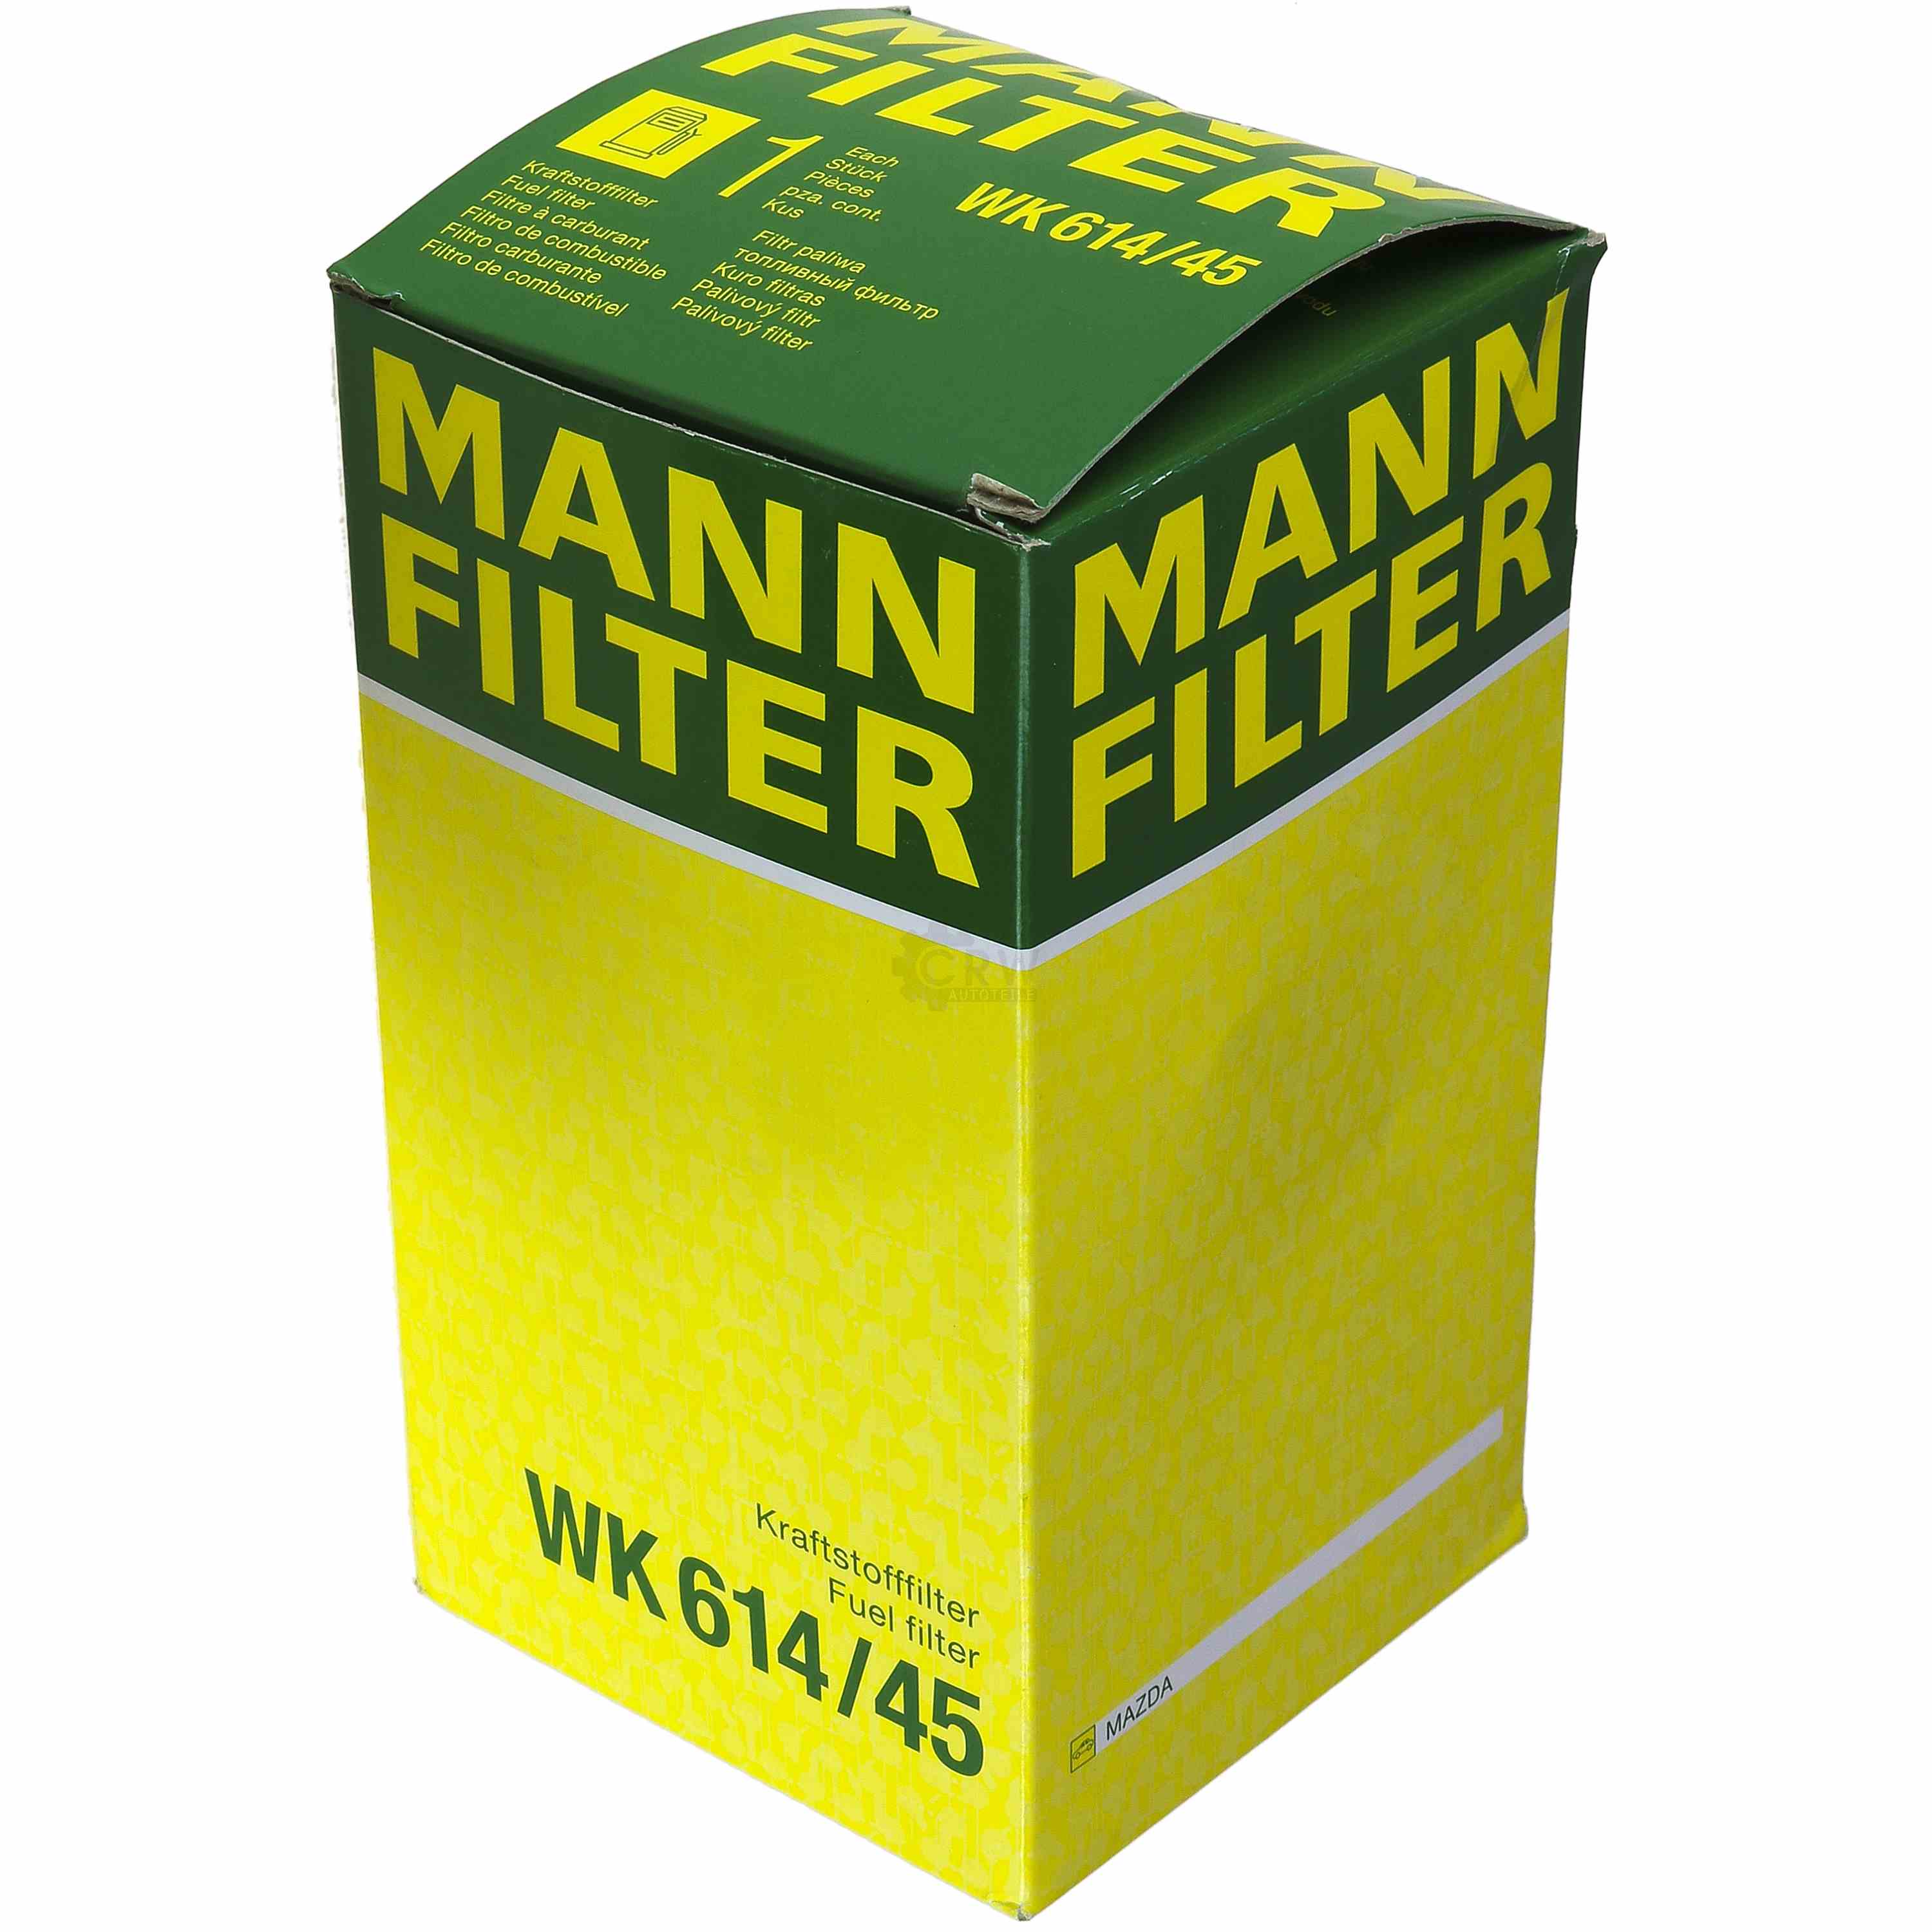 MANN-FILTER Kraftstofffilter WK 614/45 Fuel Filter